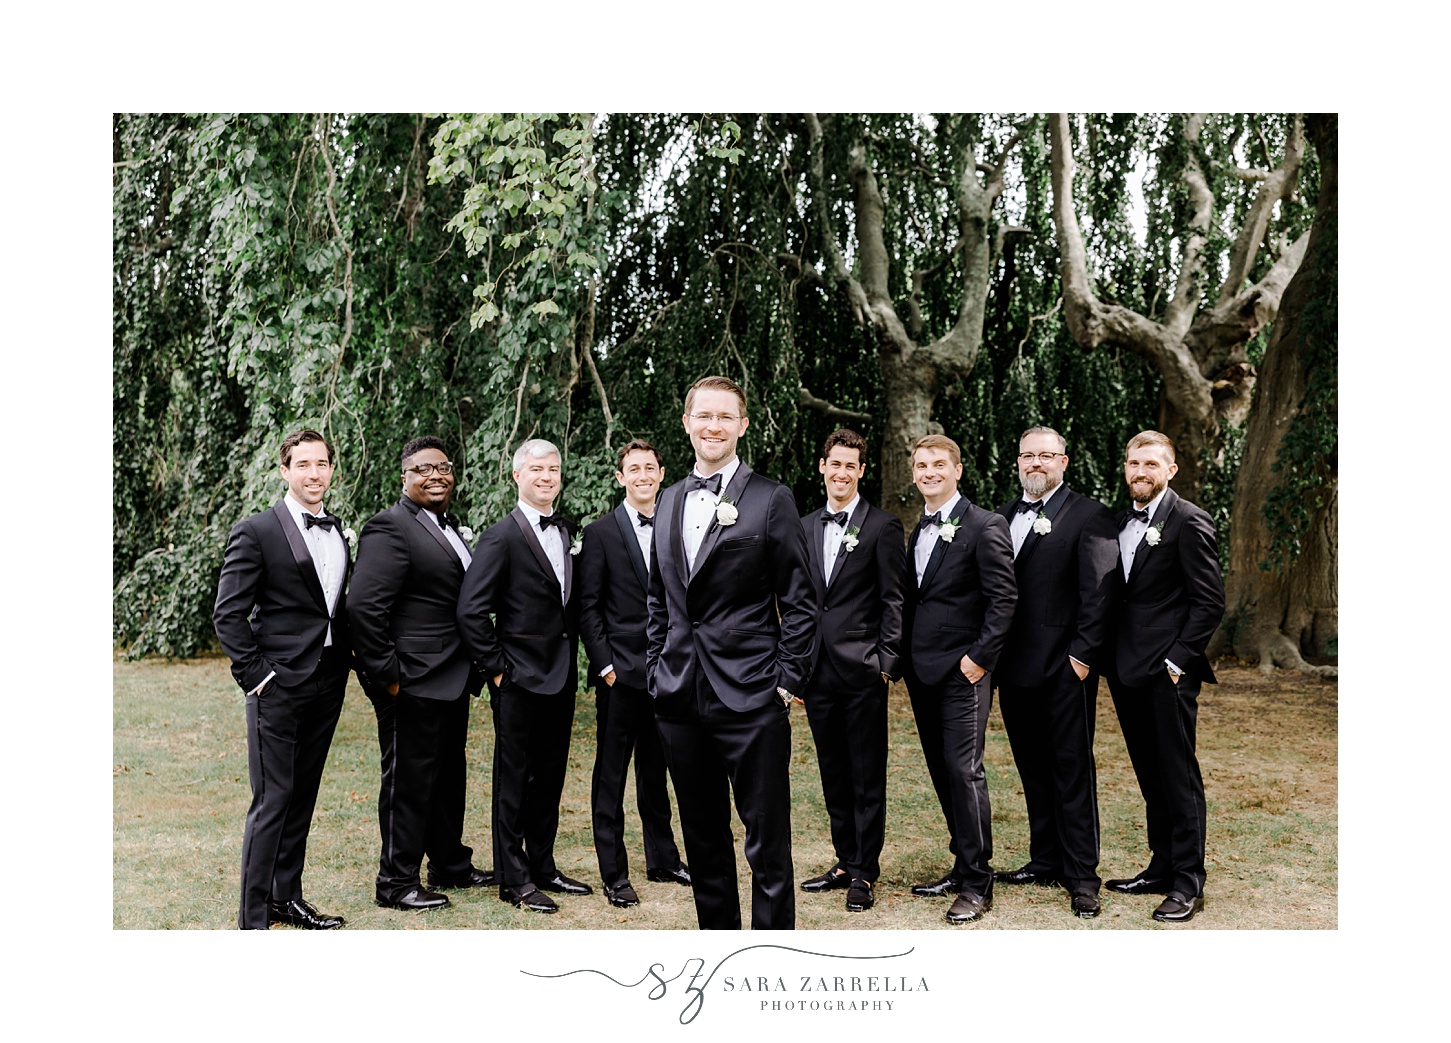 groom stands in front of groomsmen in black suits